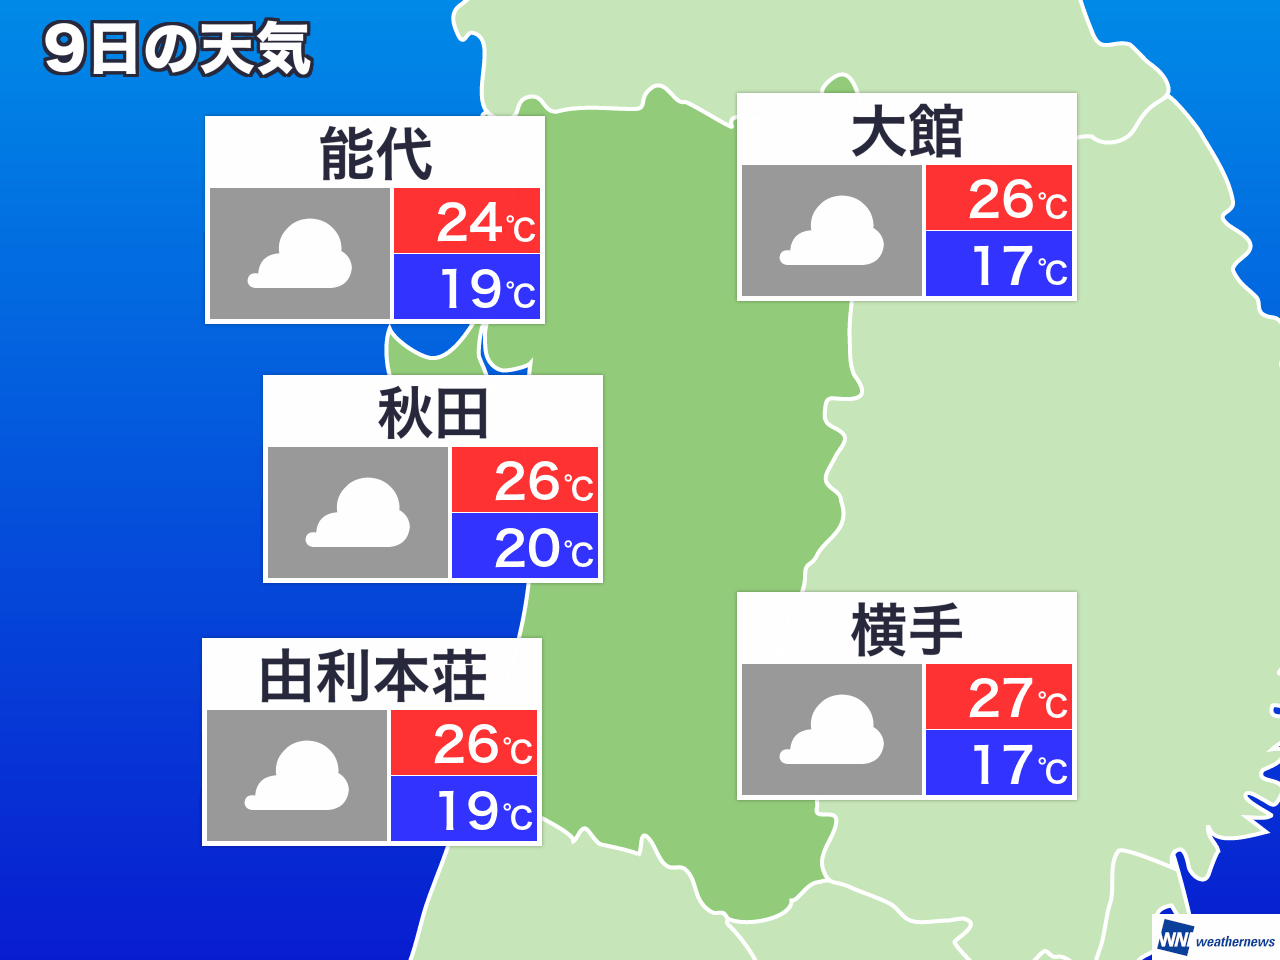 9月20日 金 秋田県の今日の天気 ウェザーニュース